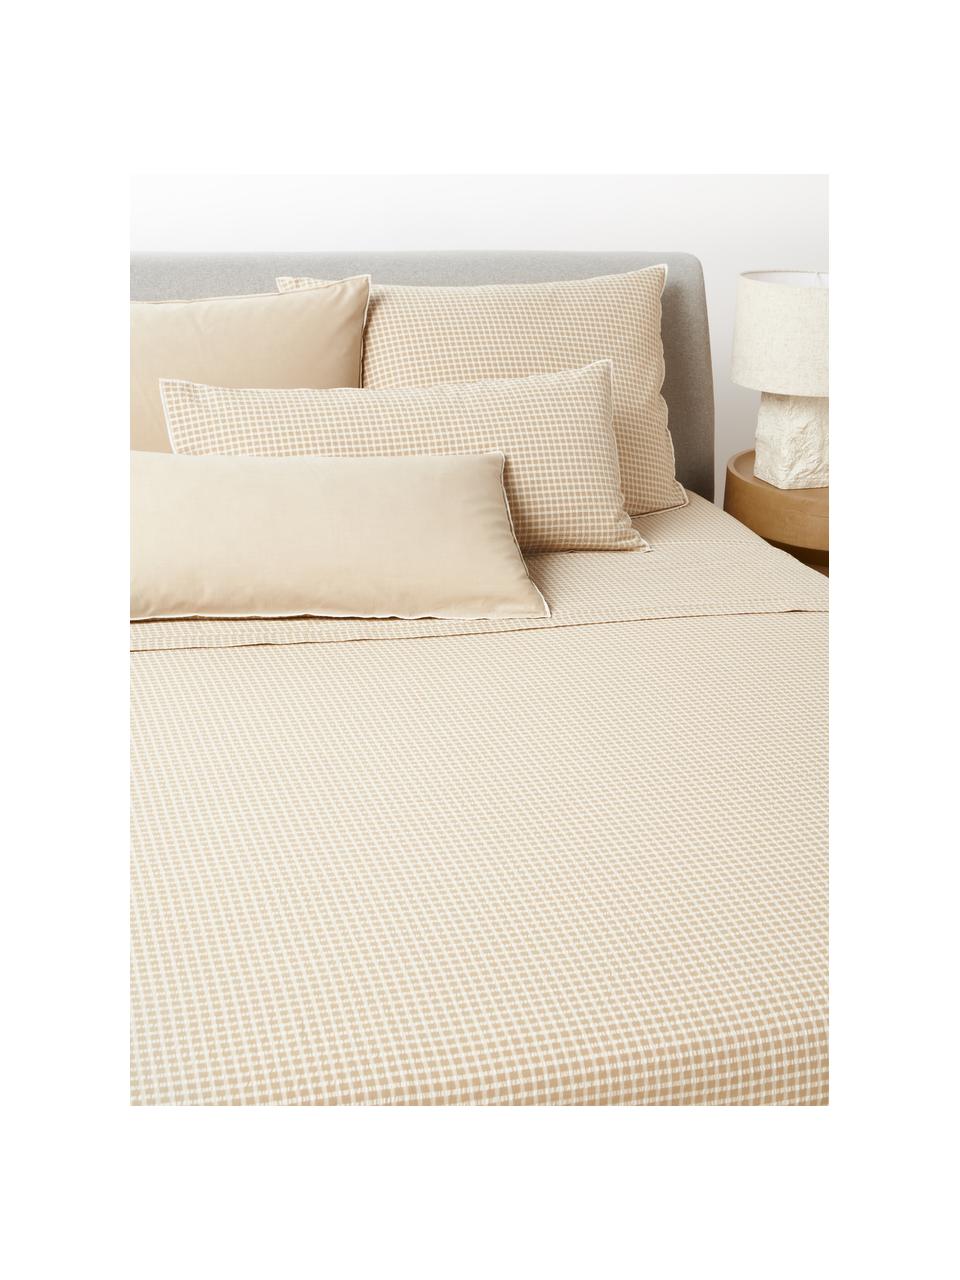 Drap de lit en coton seersucker à carreaux Davey, Beige, blanc, 240 x 280 cm